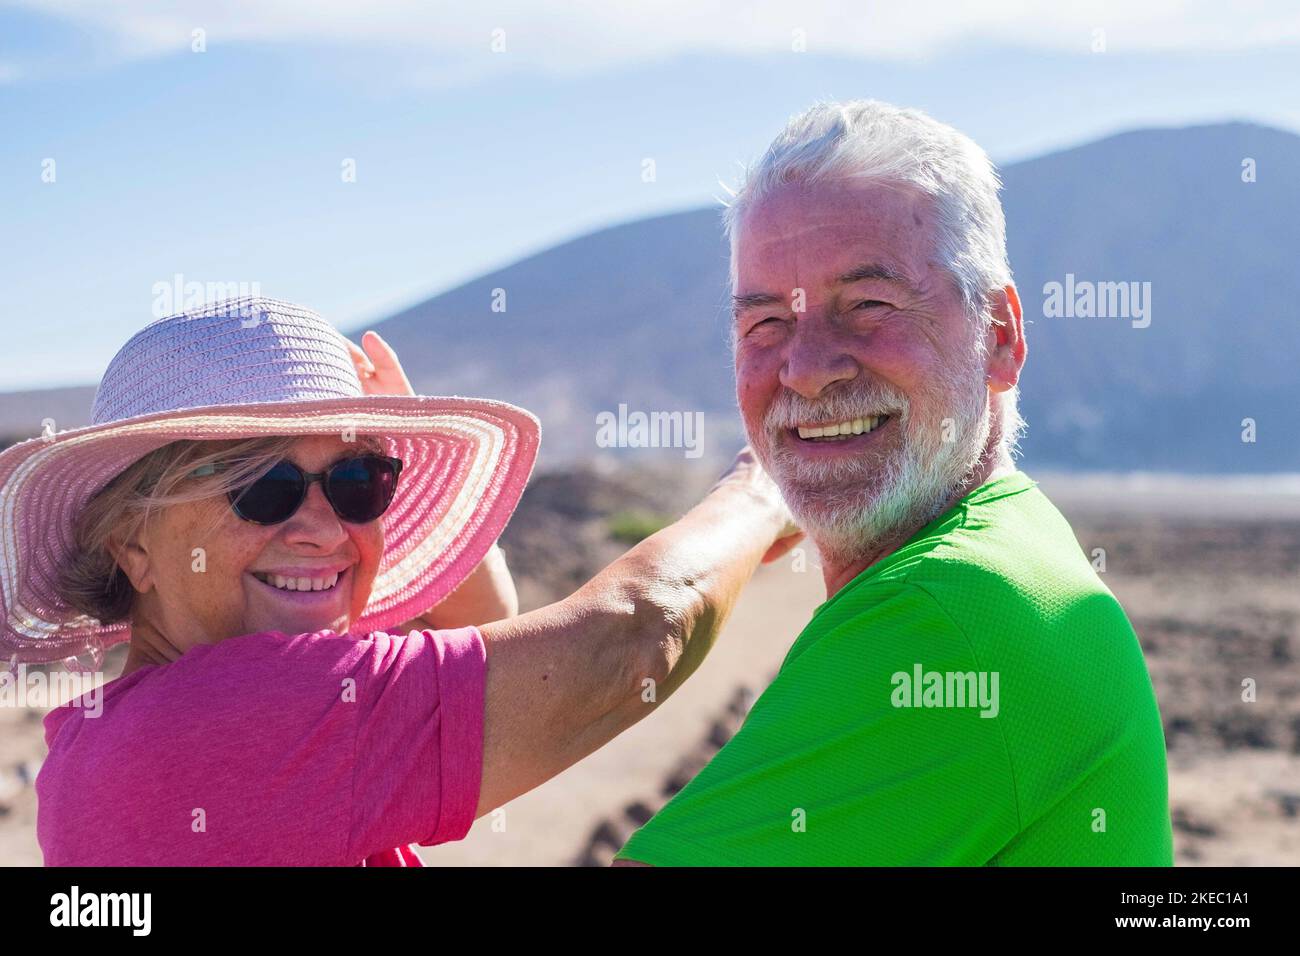 coppia di anziani in una vacanza insieme divertendosi - due persone mature che guardano la macchina fotografica sorridendo e ridendo - donna che inndicava qualcosa con il braccio Foto Stock